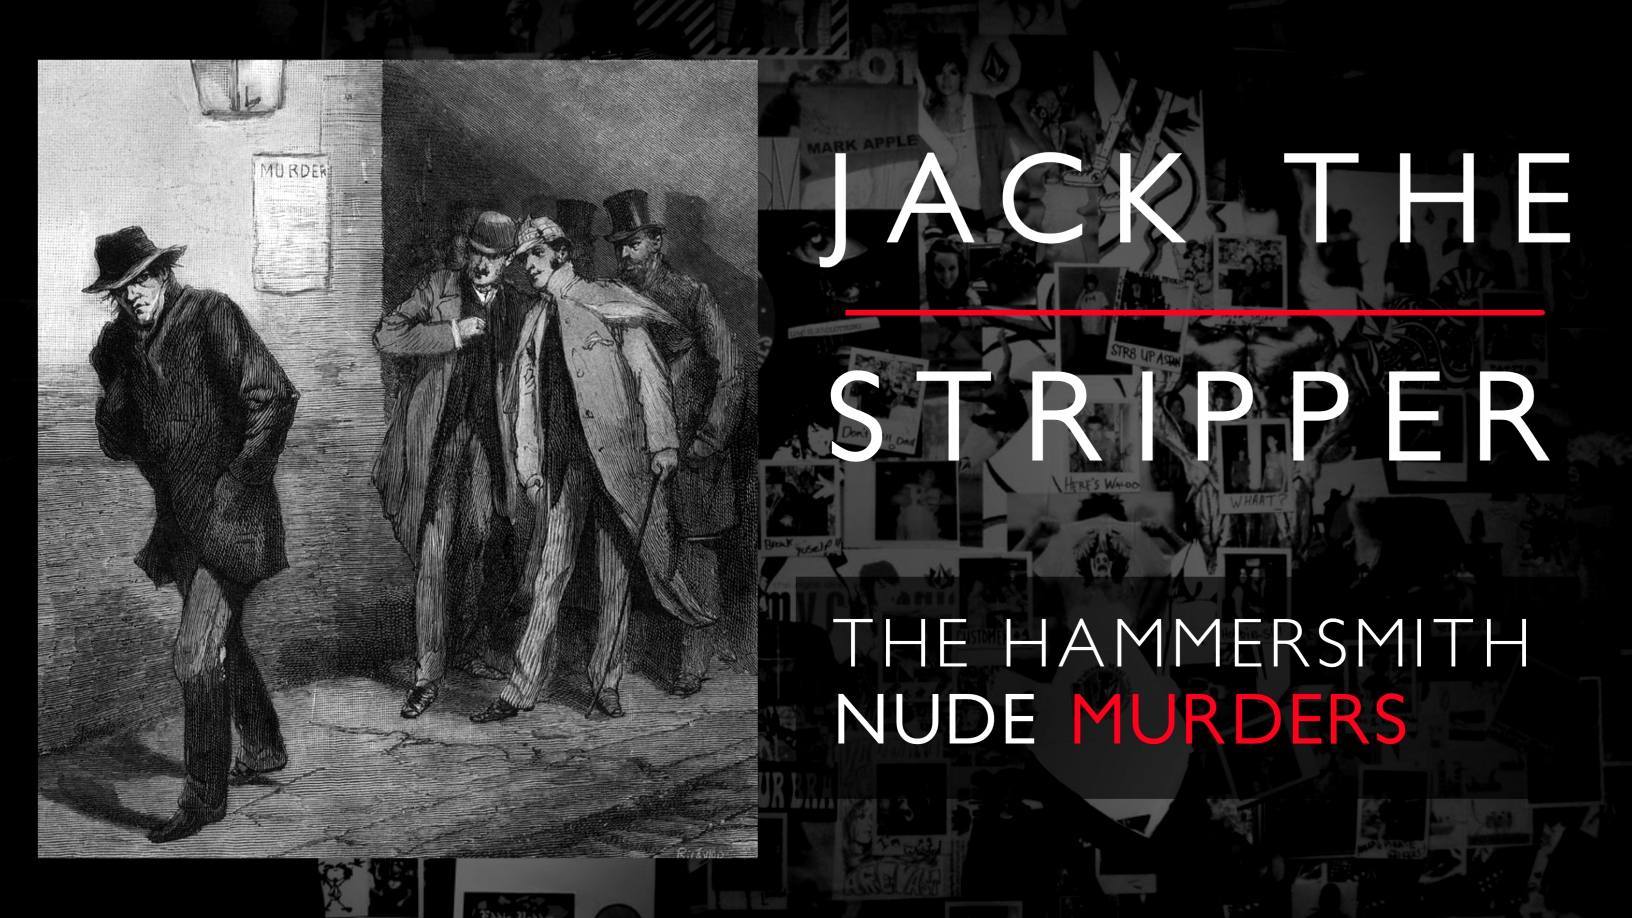 قتلهای برهنه Hammersmith: جک استریپر کننده کی بود؟ 1